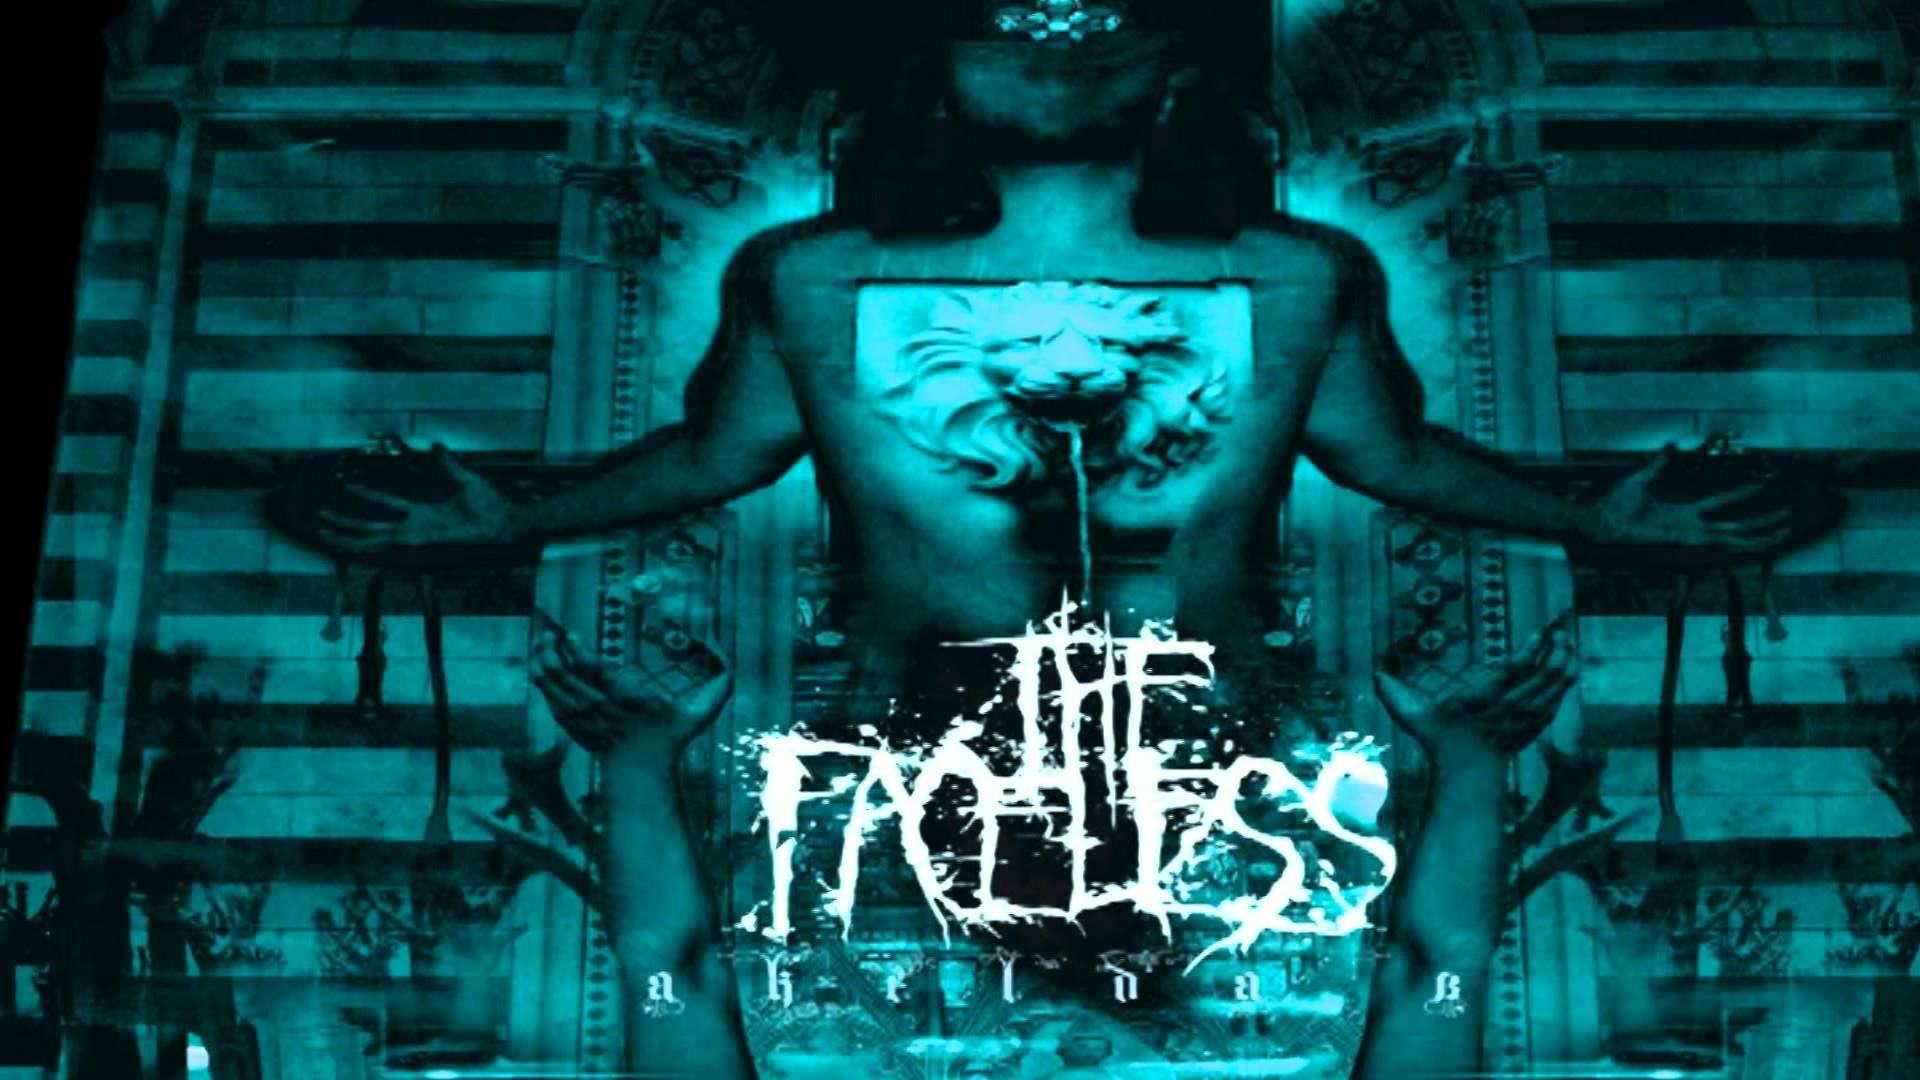 The Faceless - Pestilence - YouTube